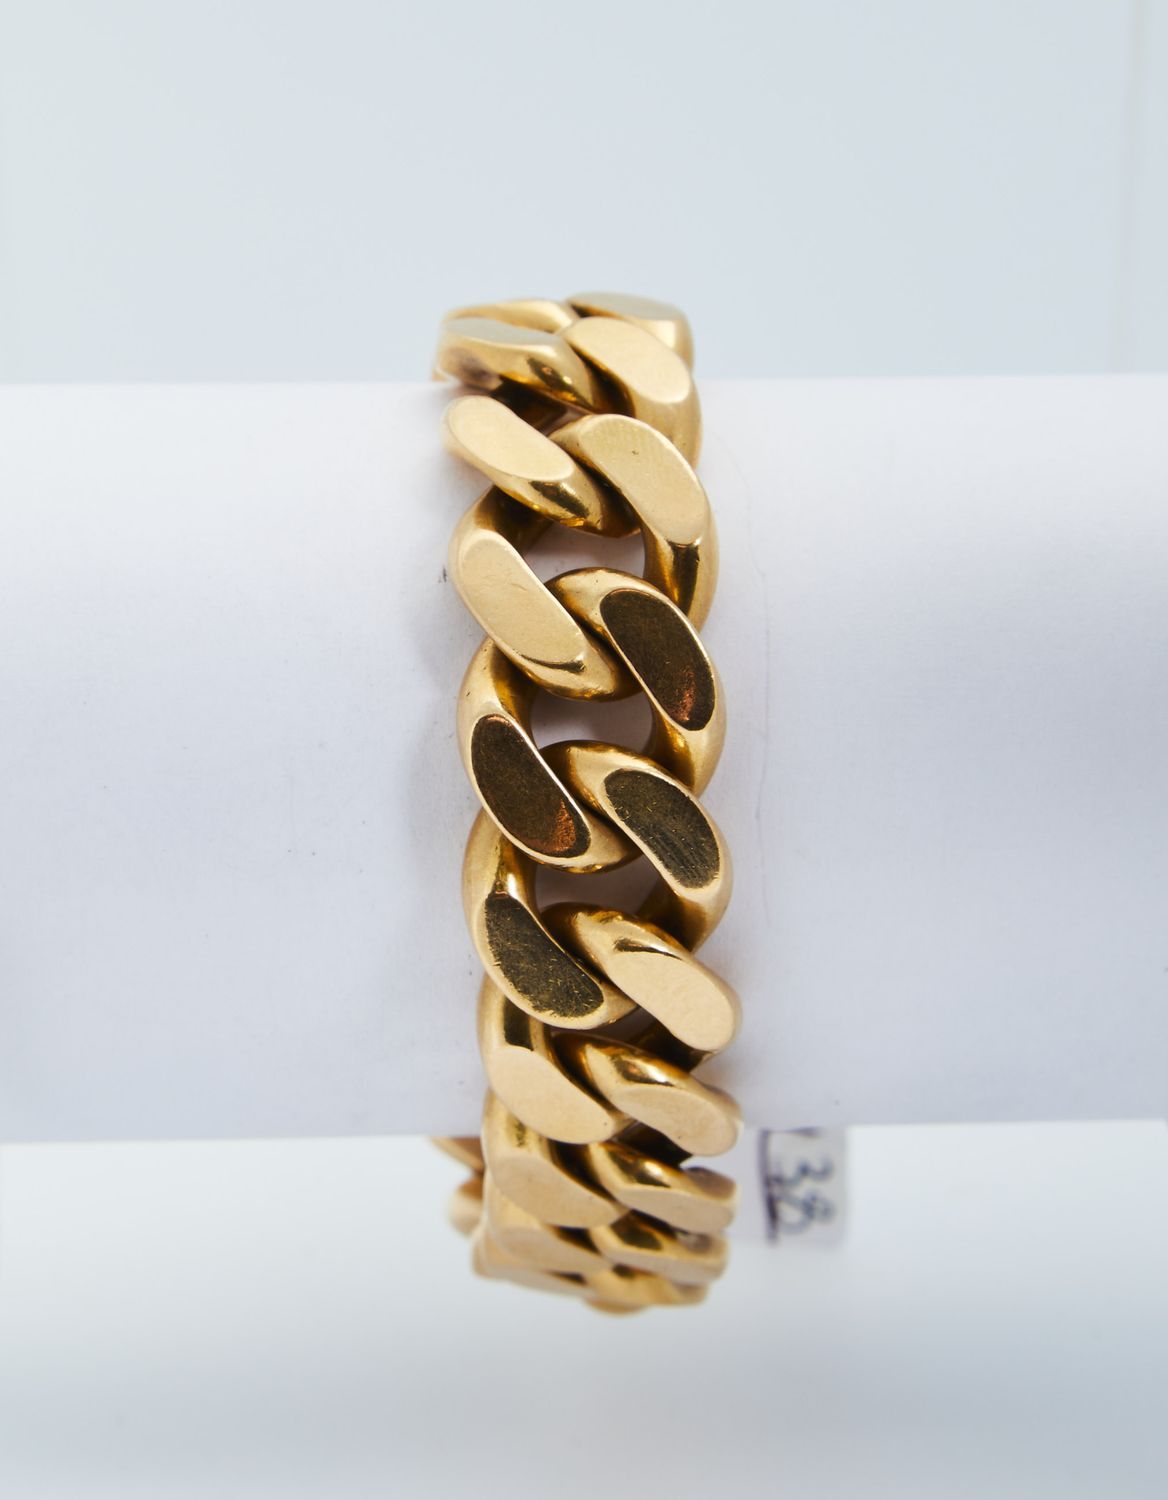 Null 217 Armband aus Gelbgold mit Gourmet-Maschen, Handgelenk 19 cm, Gewicht 132&hellip;